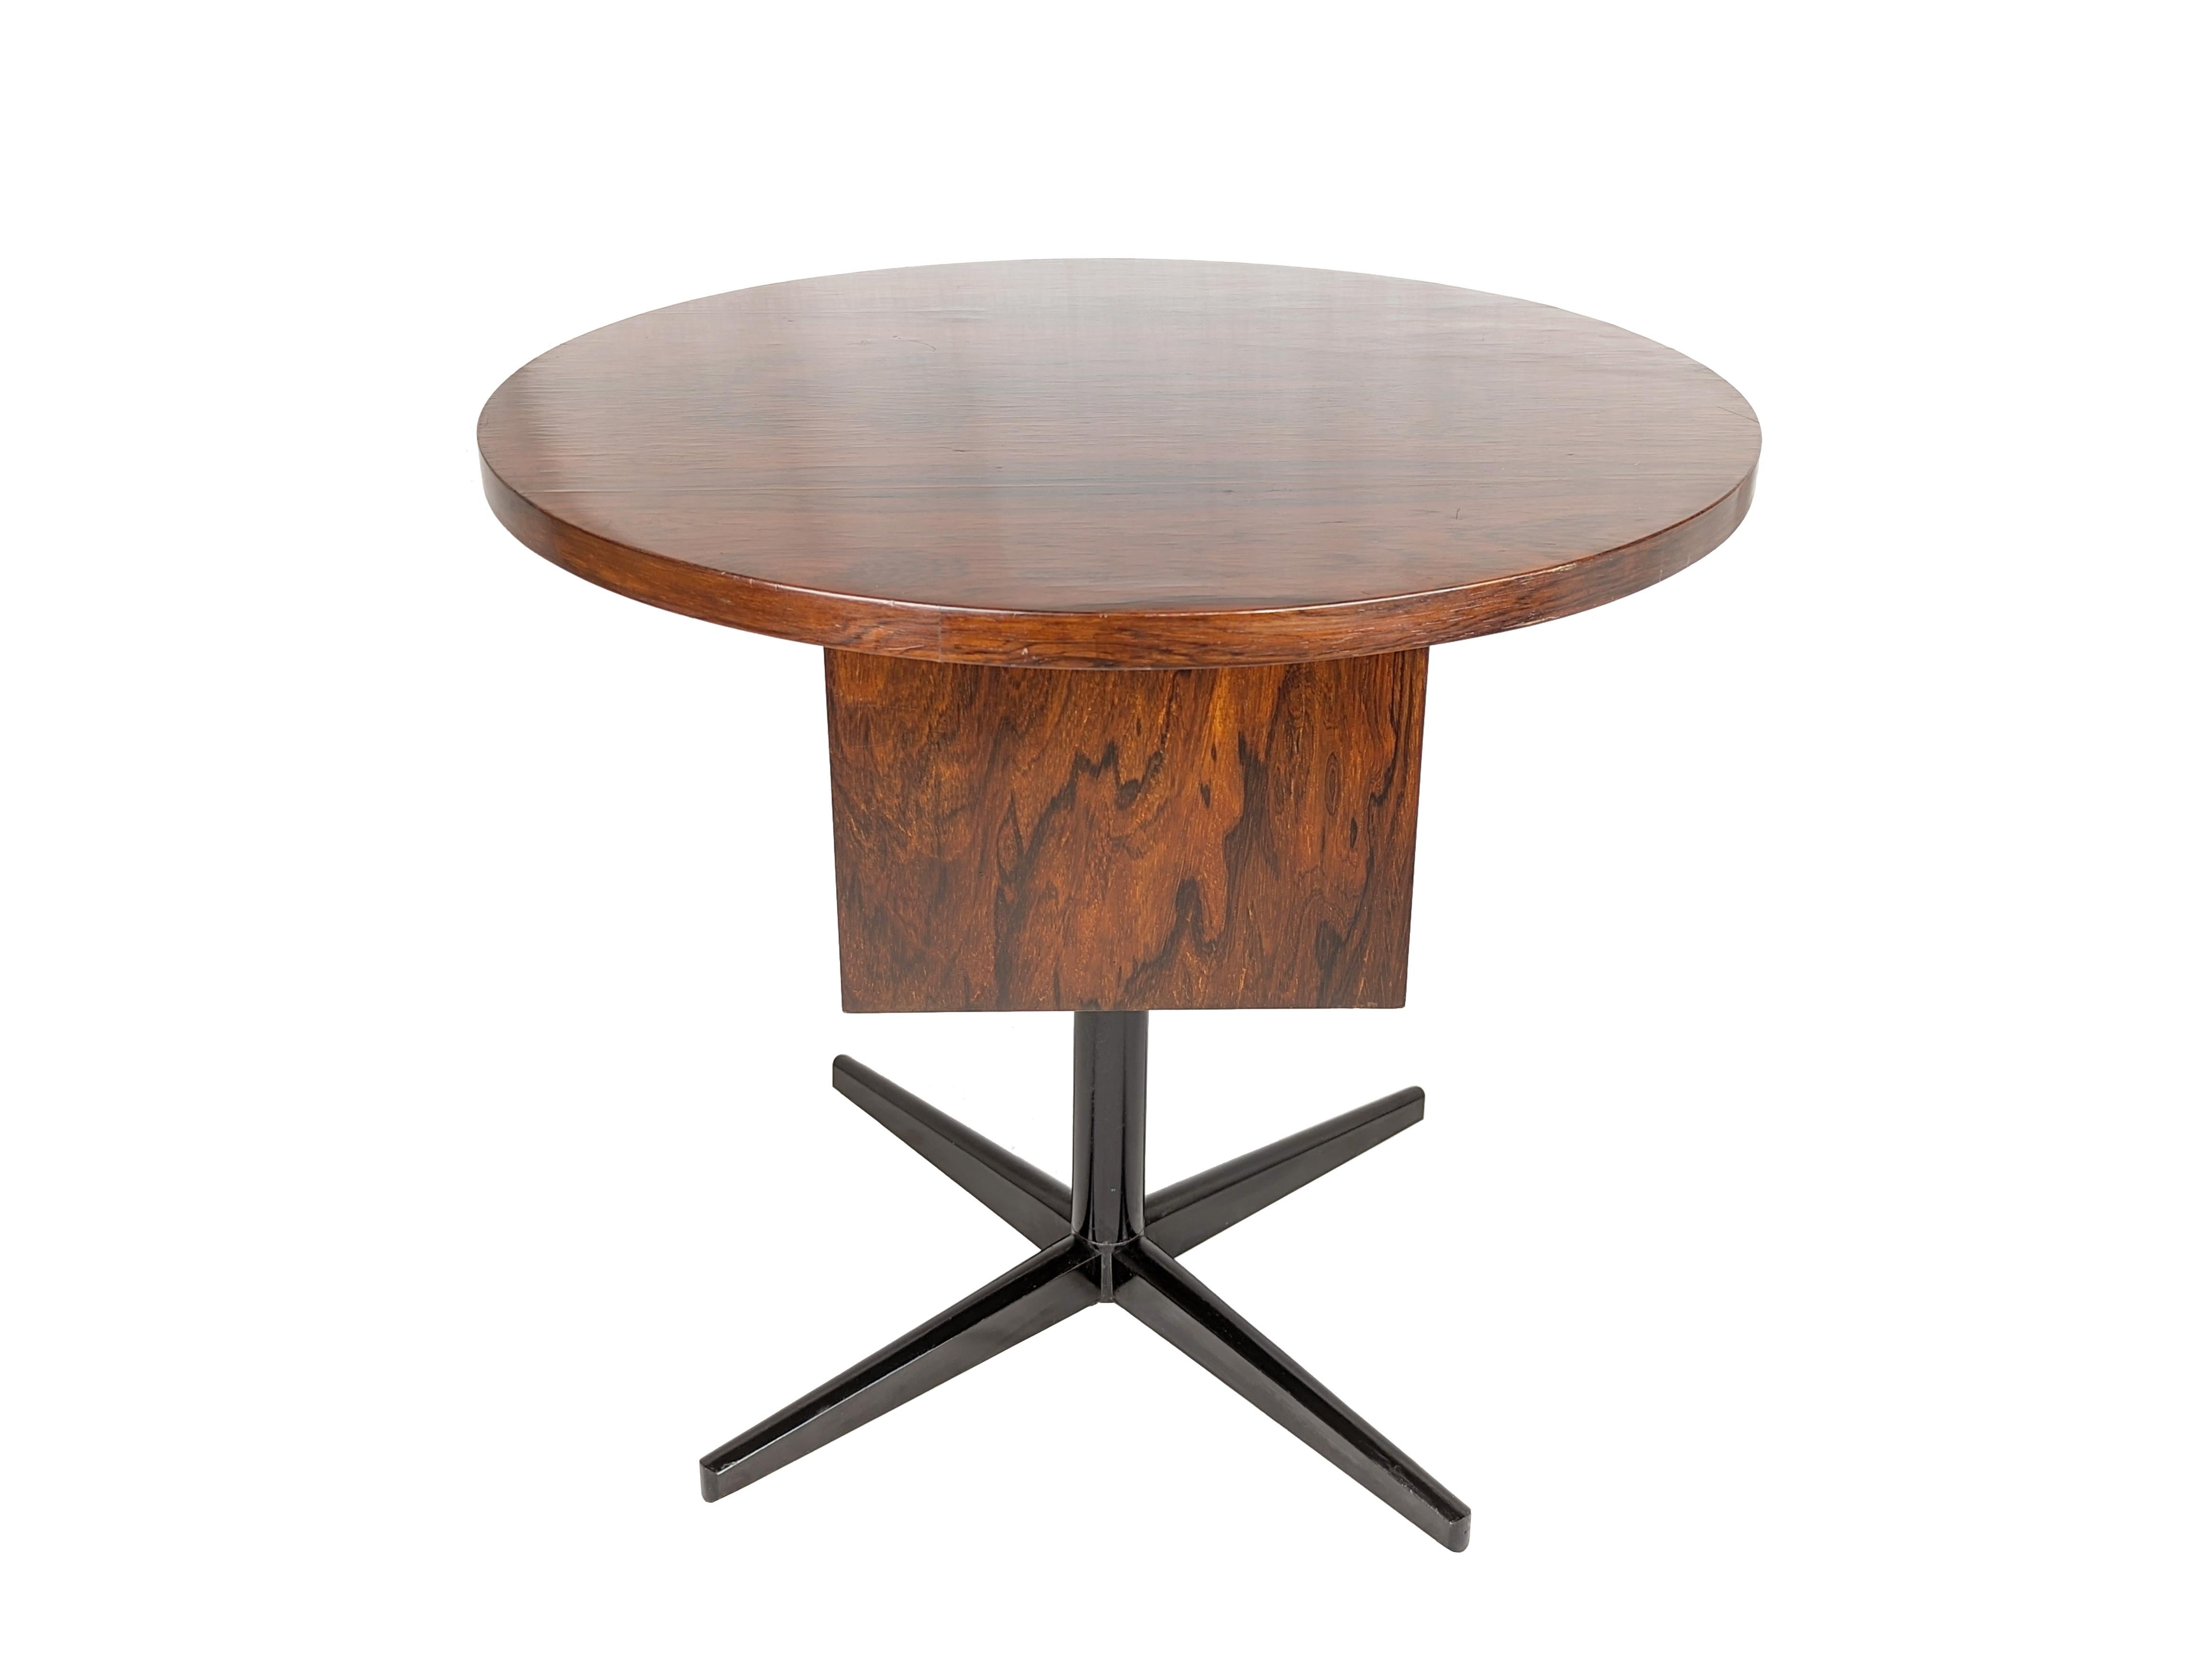 Niedriger Tisch aus Holz und schwarz lackiertem Metallgestell, hergestellt zwischen Ende der 1950er und Anfang der 60er Jahre.
Guter Vintage-Zustand: Oxidation und einige Farbverluste auf dem Metallsockel. Das Holz ist teilweise restauriert